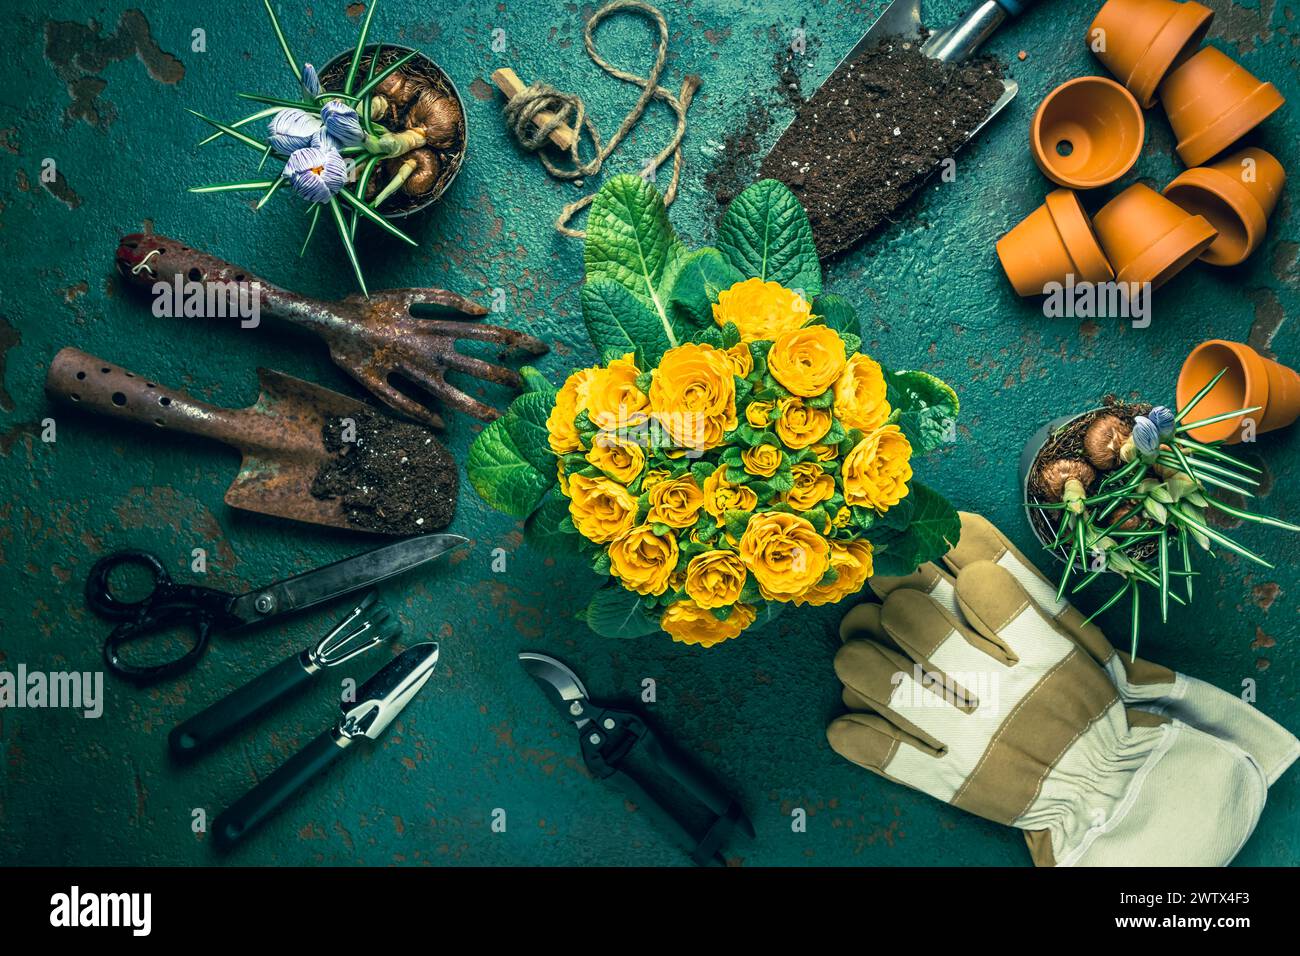 Outils de jardinage, taille, horticulture et potager. Concept de jardinage. Banque D'Images